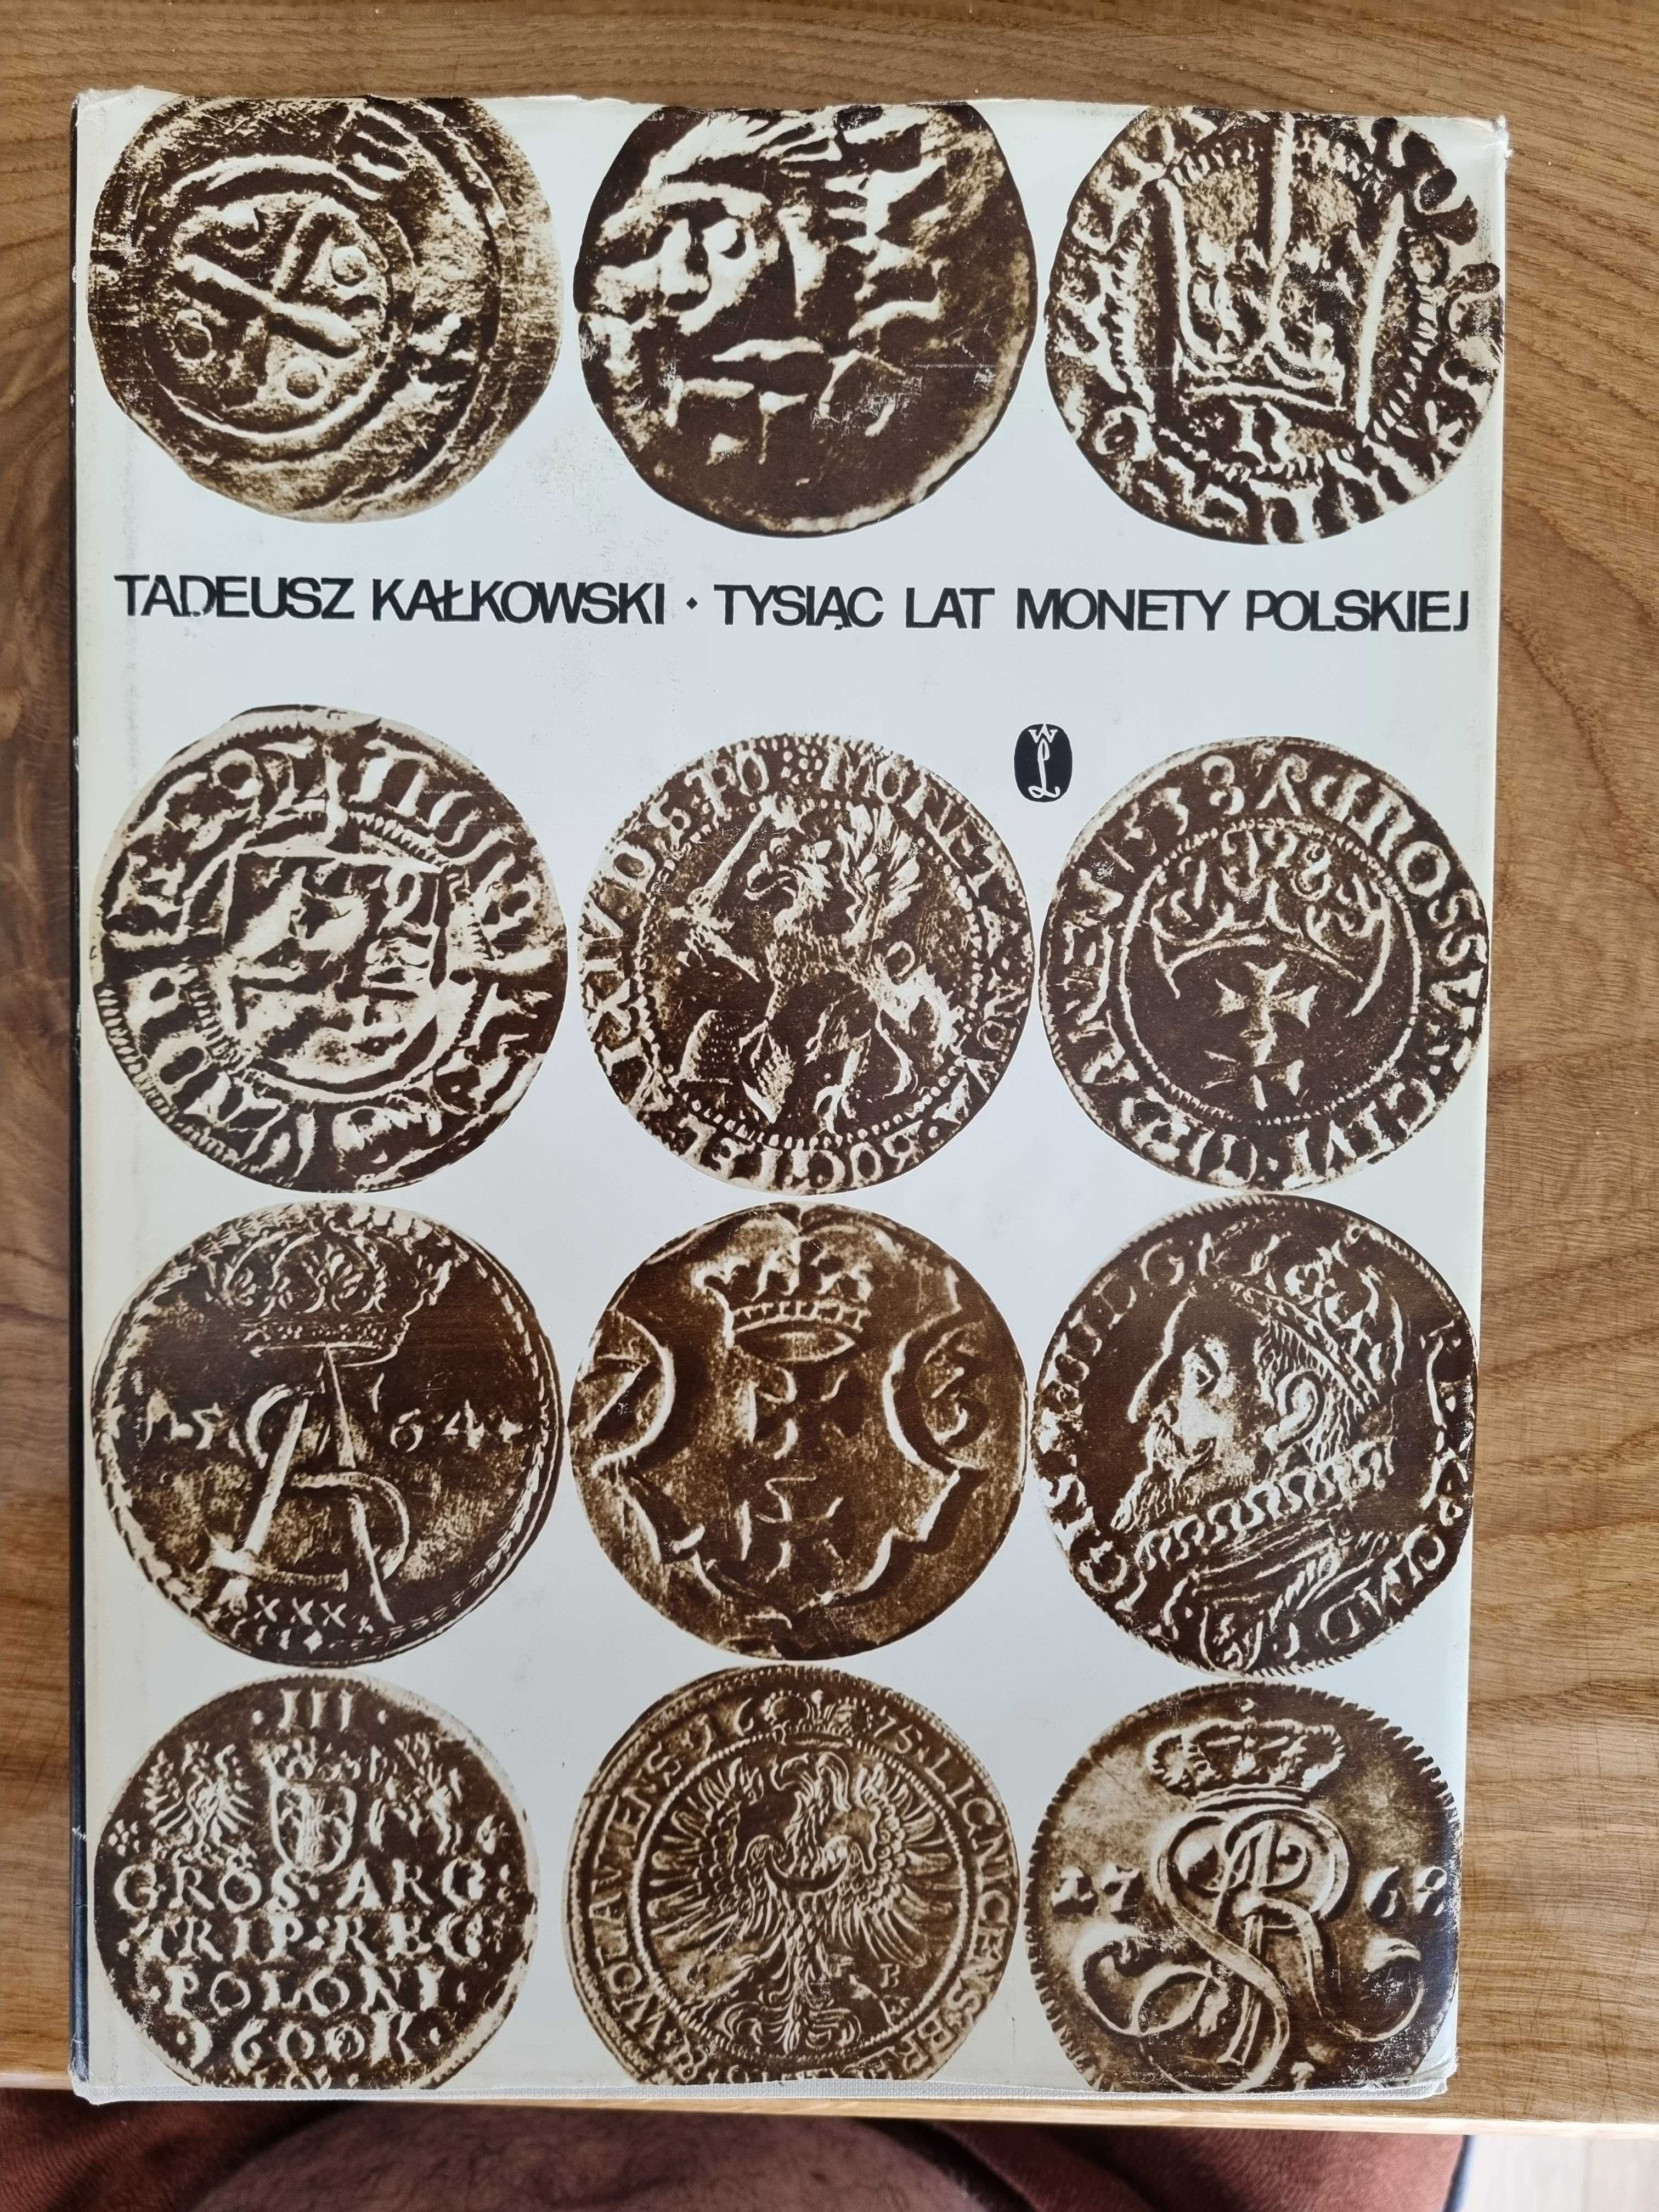 Tysiac lat monety polskiej Tadeusz Kałkowski